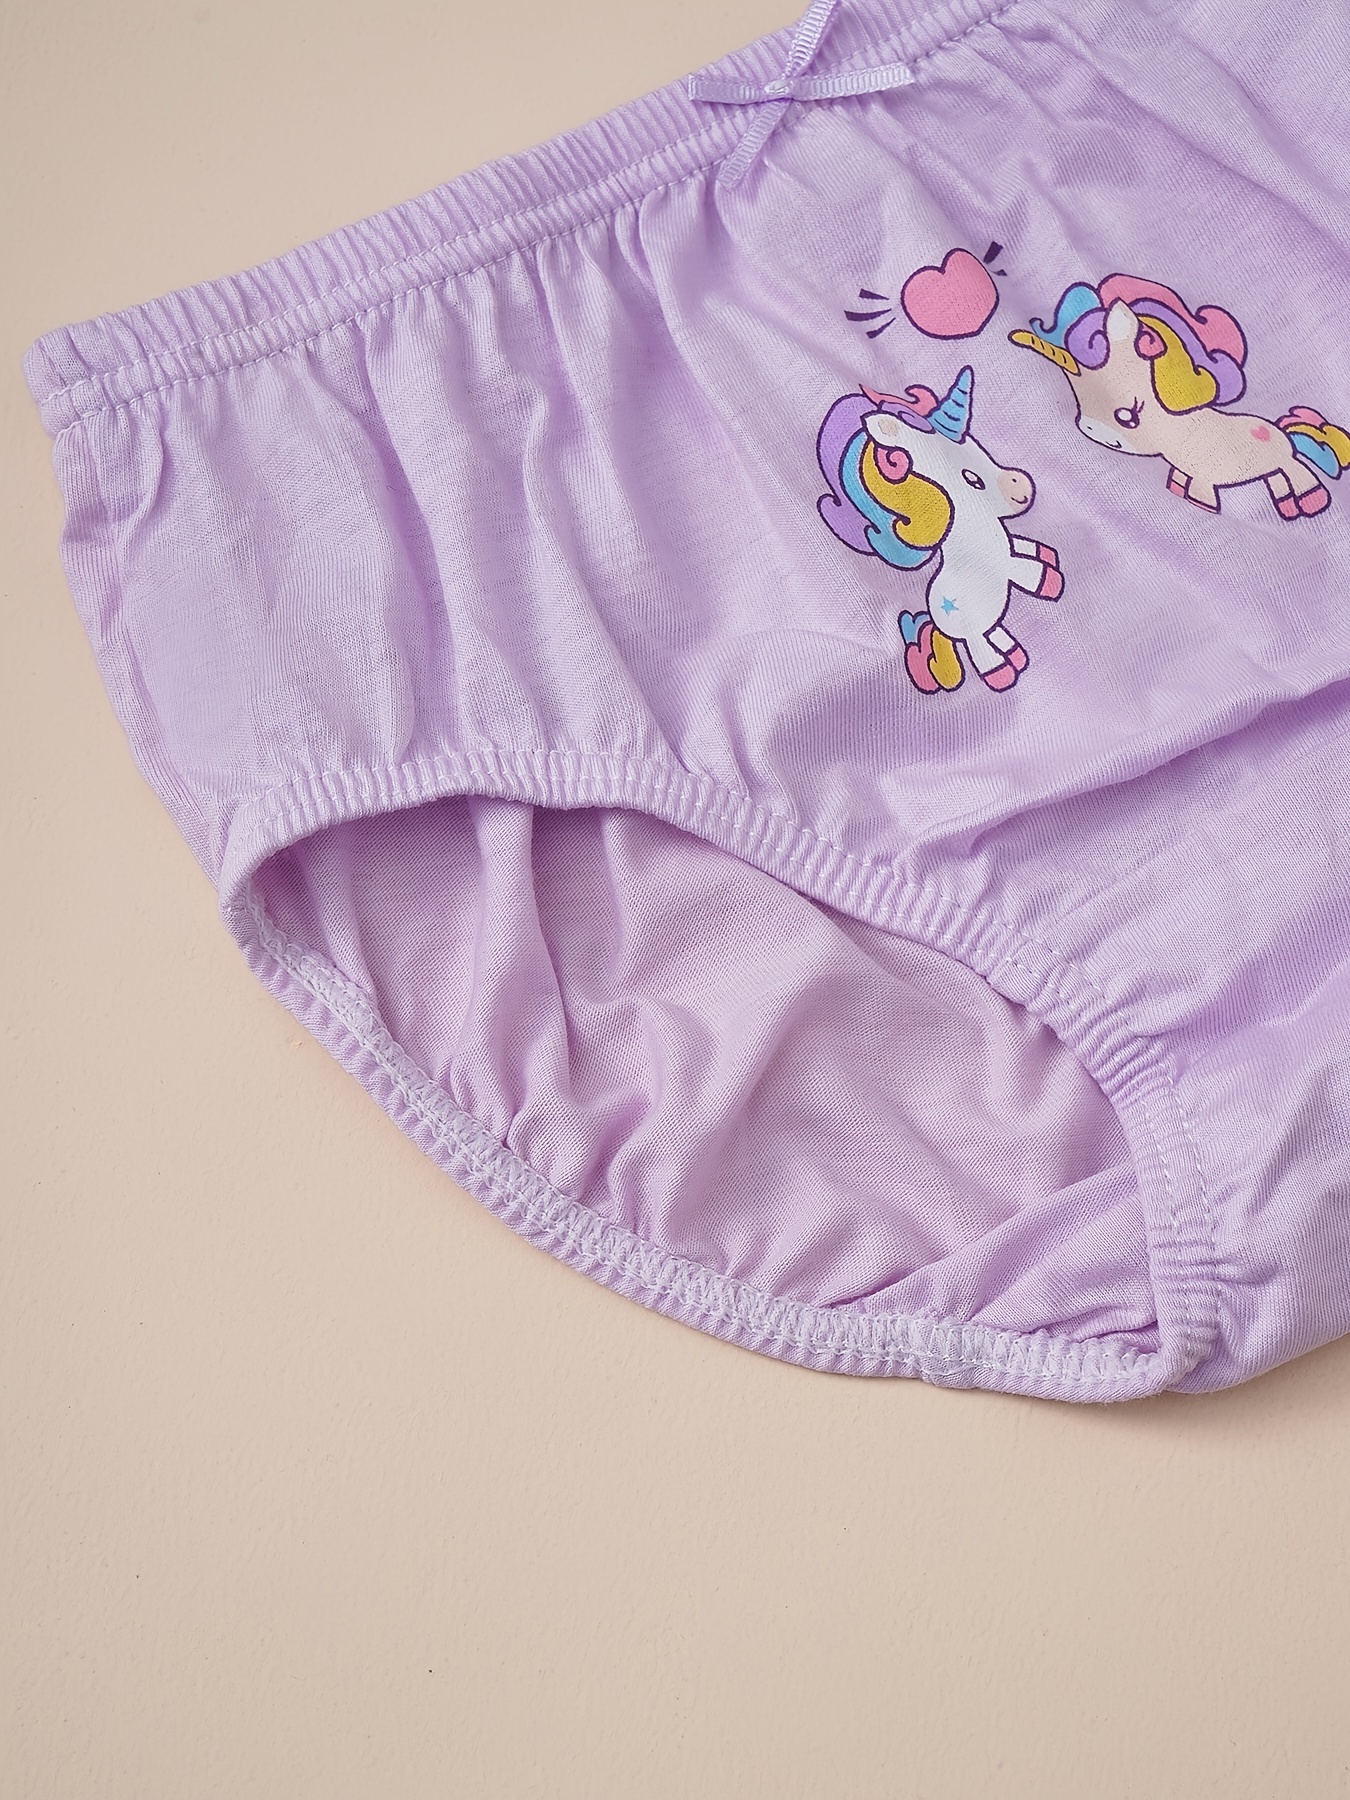 Cotton underwear set Unicorns